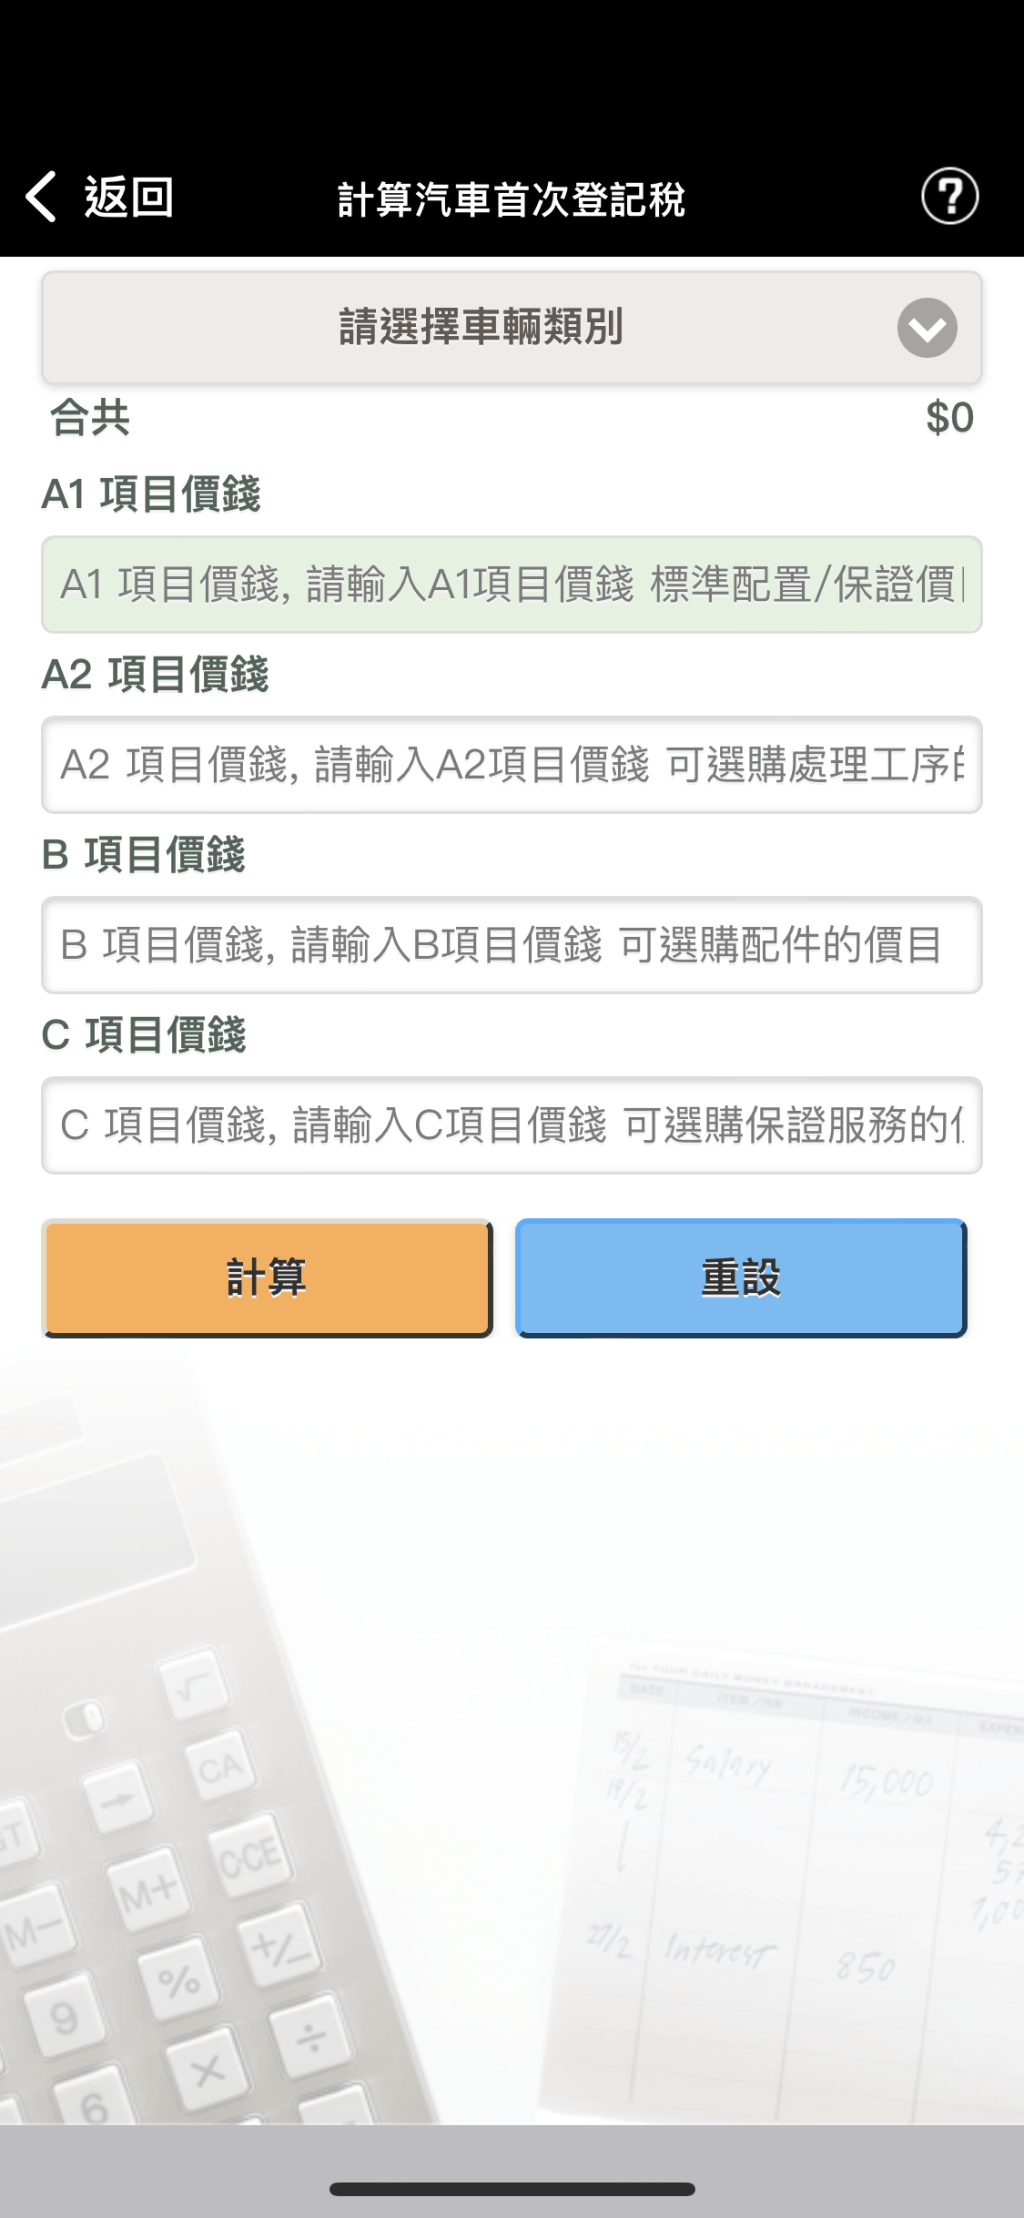 应用程式内能「计算汽车首次登记税」的税项。（HK Car Tax截图）